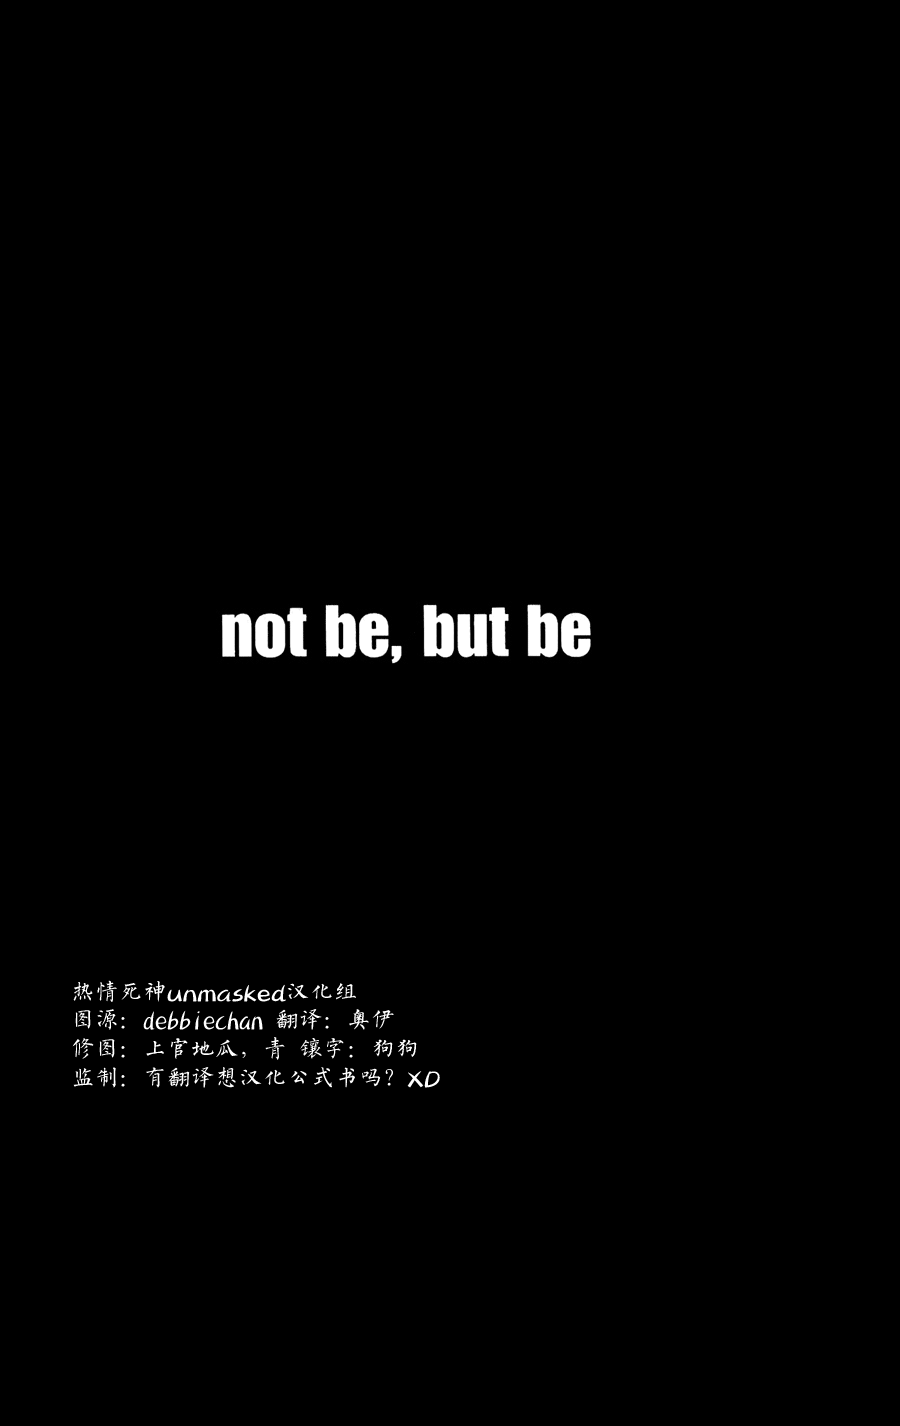 unmaskedƪ not be but be